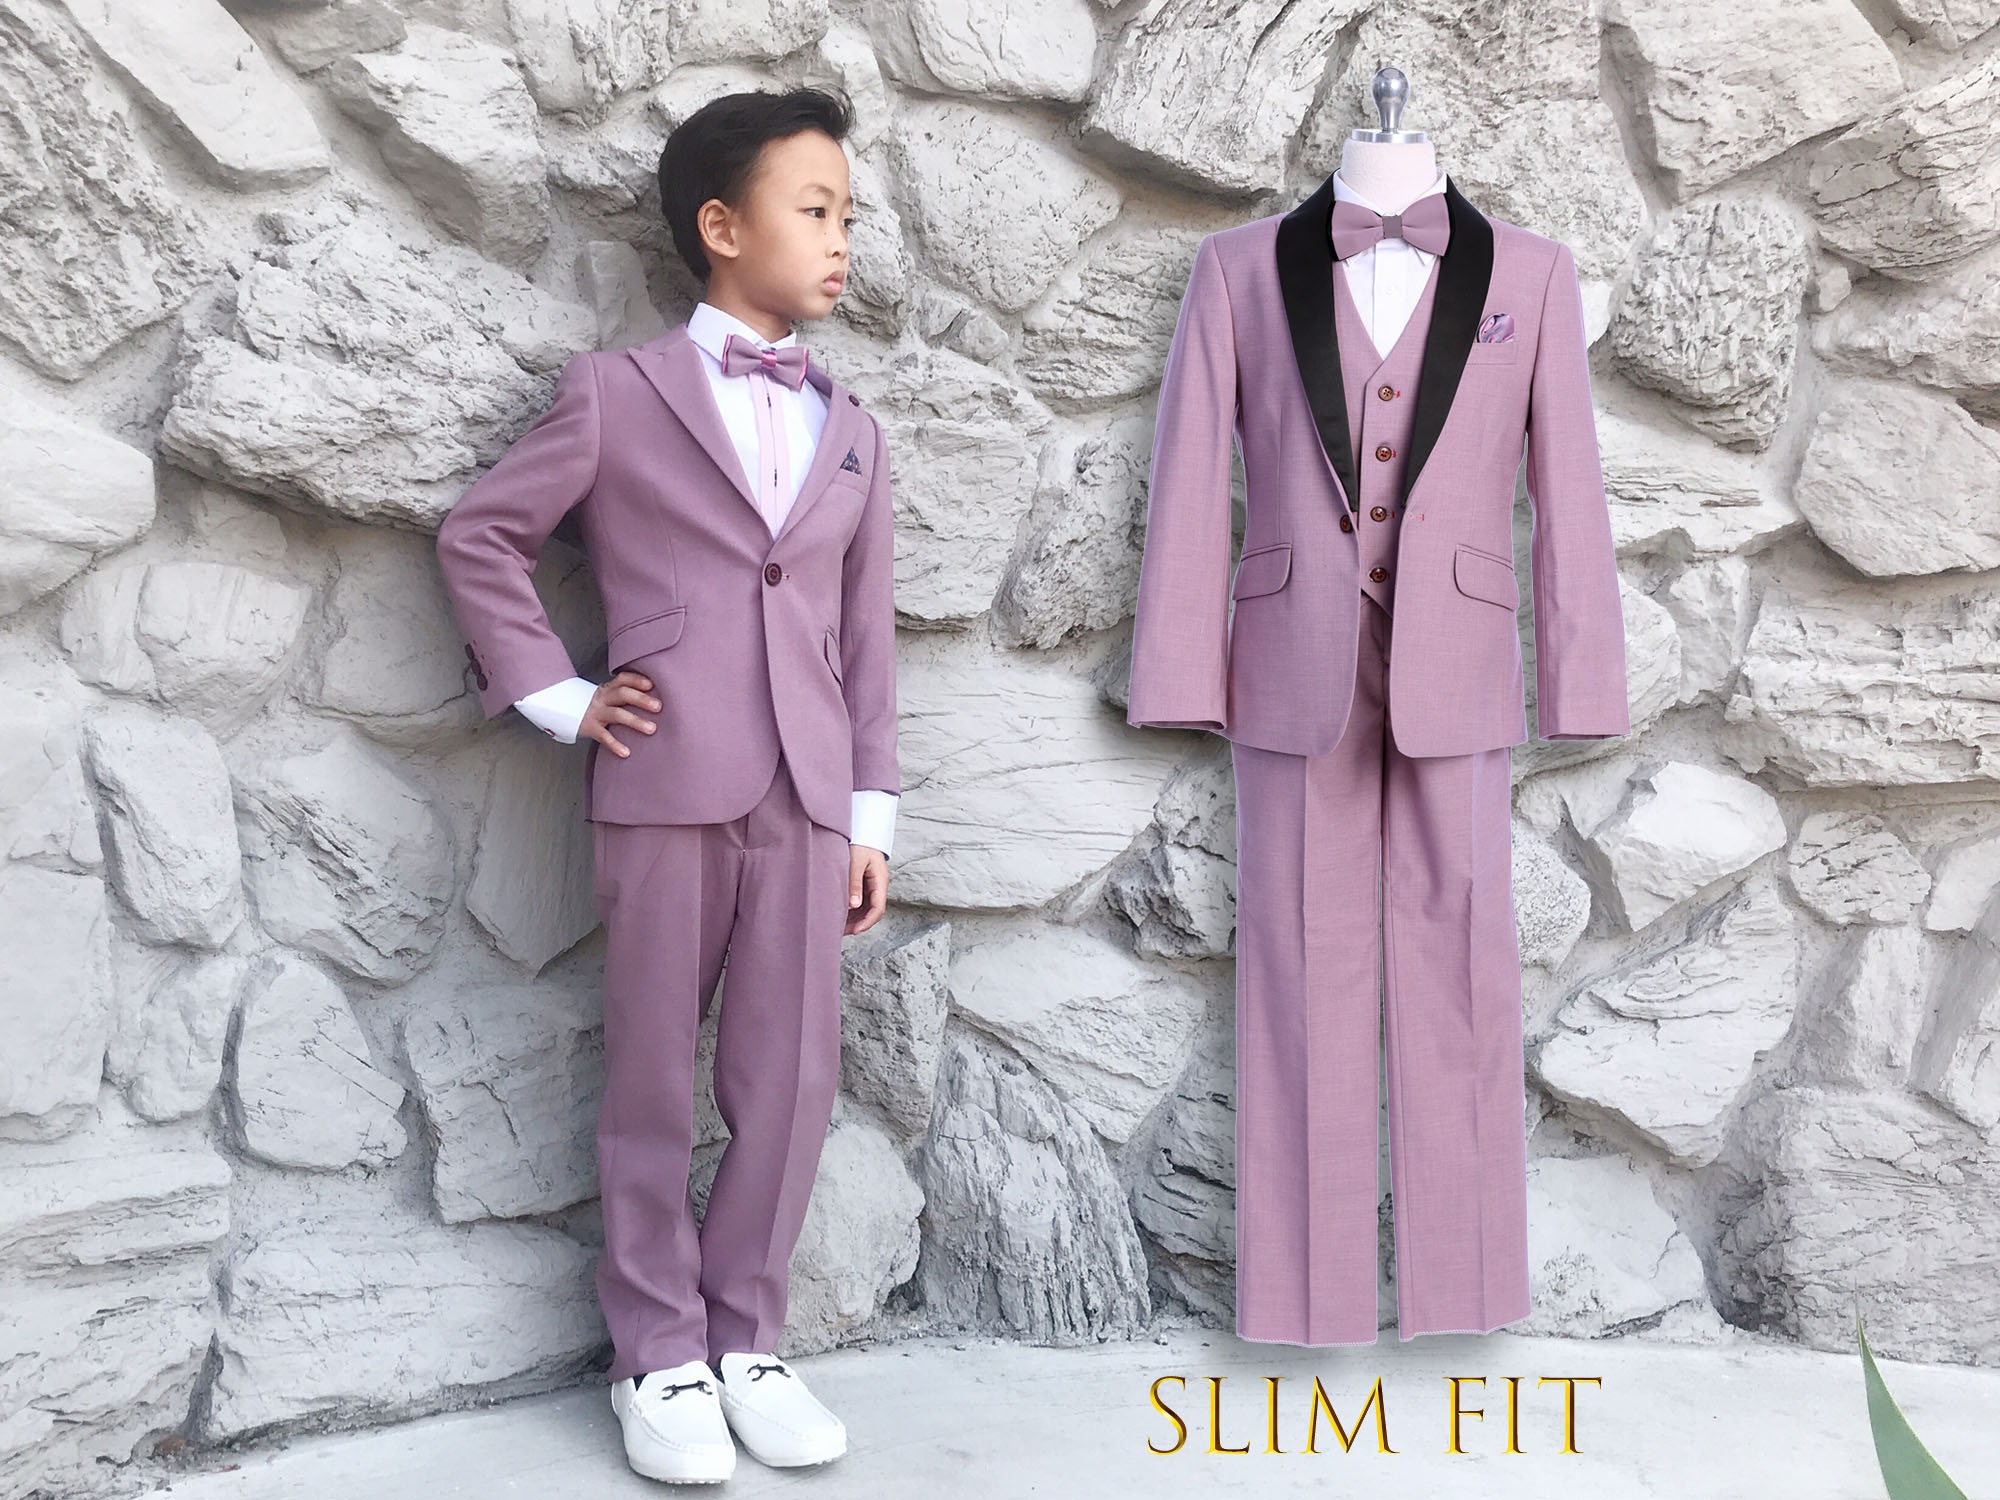 Slim Fit Toddler Boys Formal suit 5 pcs set coat,vest,pant,shirt,clip tie 